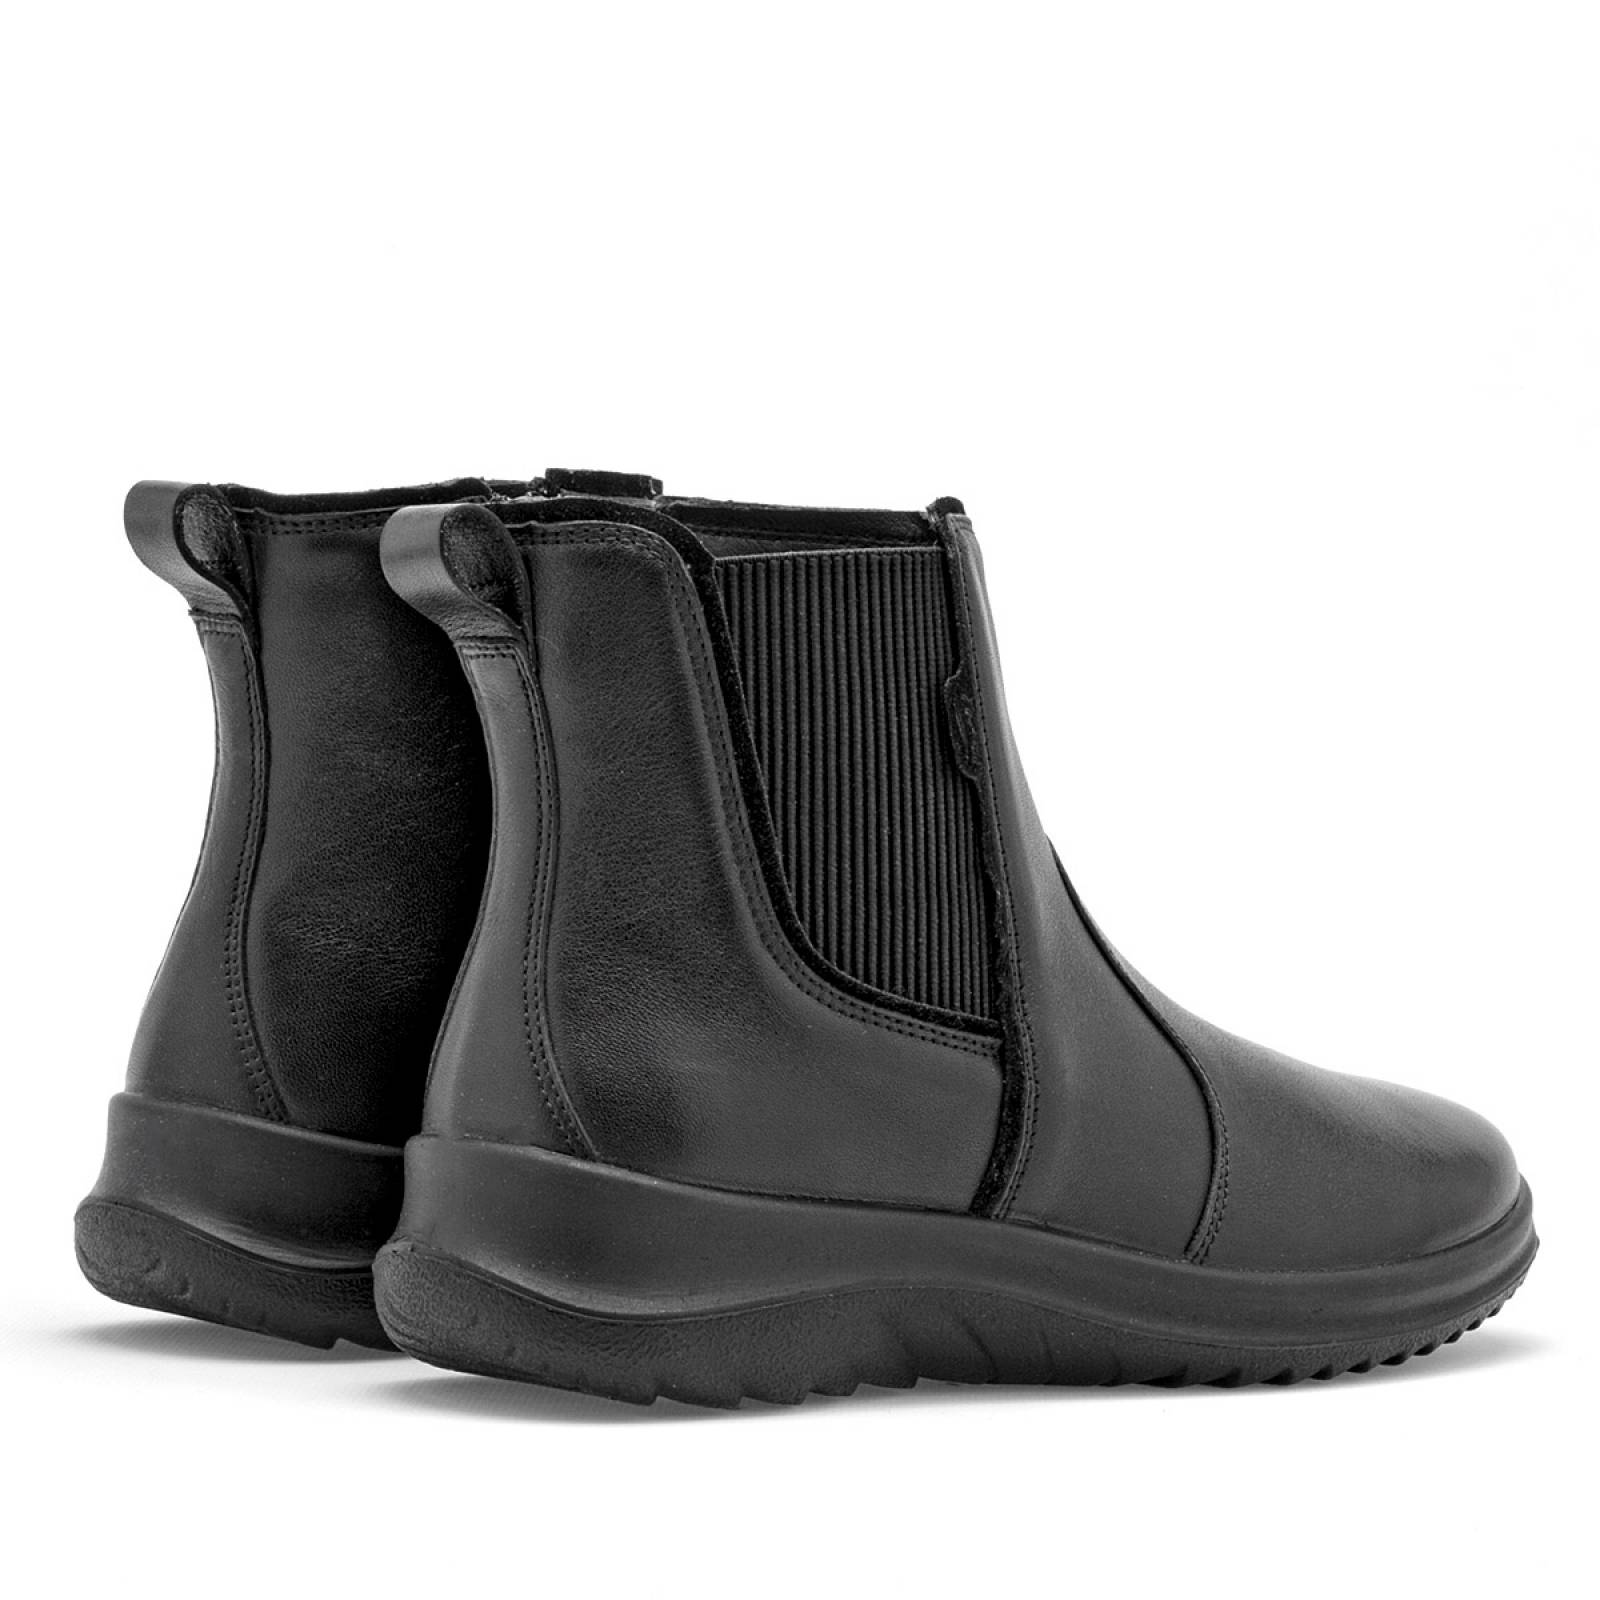 Nuevo Zapatos de Seguridad Vivobarefoot Mujer - Fulham Negras